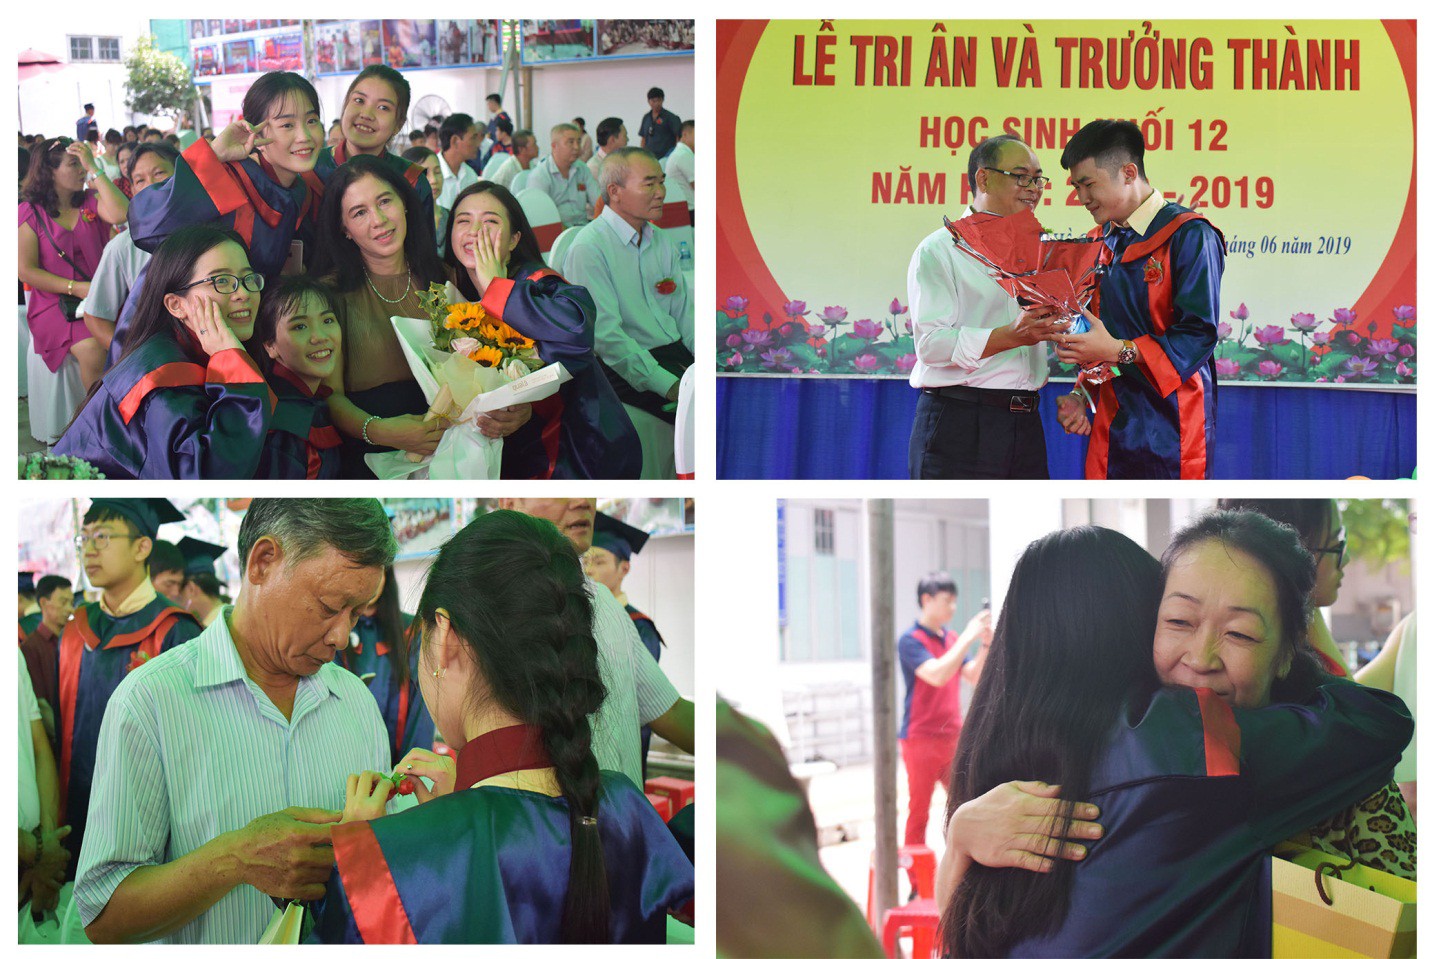 Nước mắt xen lẫn niềm vui trong lễ tri ân và trưởng thành của teen Mỹ Việt - Ảnh 8.